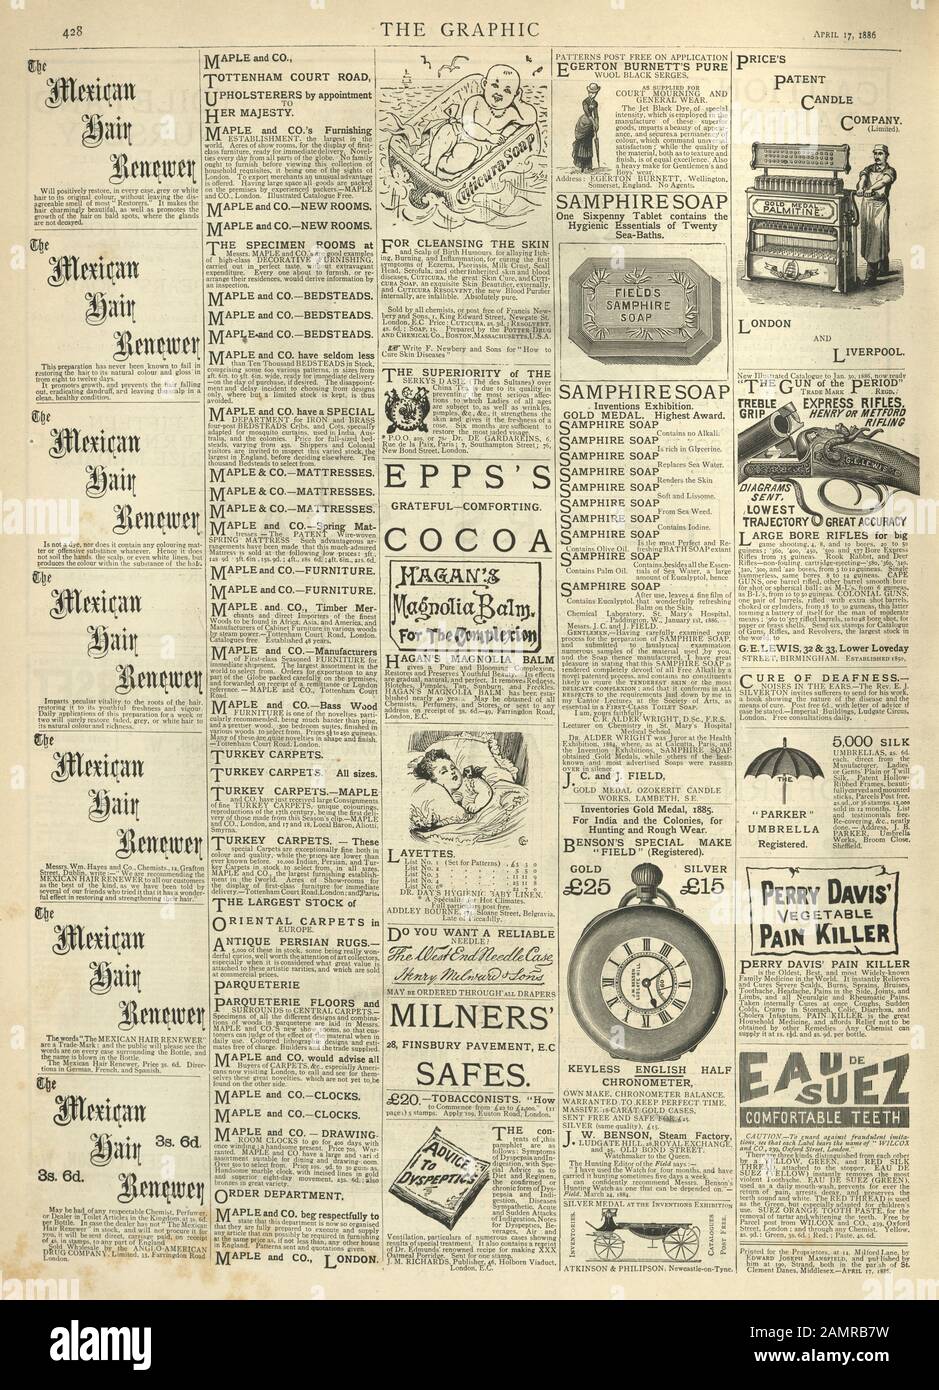 Pagina di annunci vittoriani da Graphic Illustrated Newspaper. 1886.Mexican hair renewer, soap, Epp's Cocoa, Magnolia Balm, Patent Candle Company Foto Stock